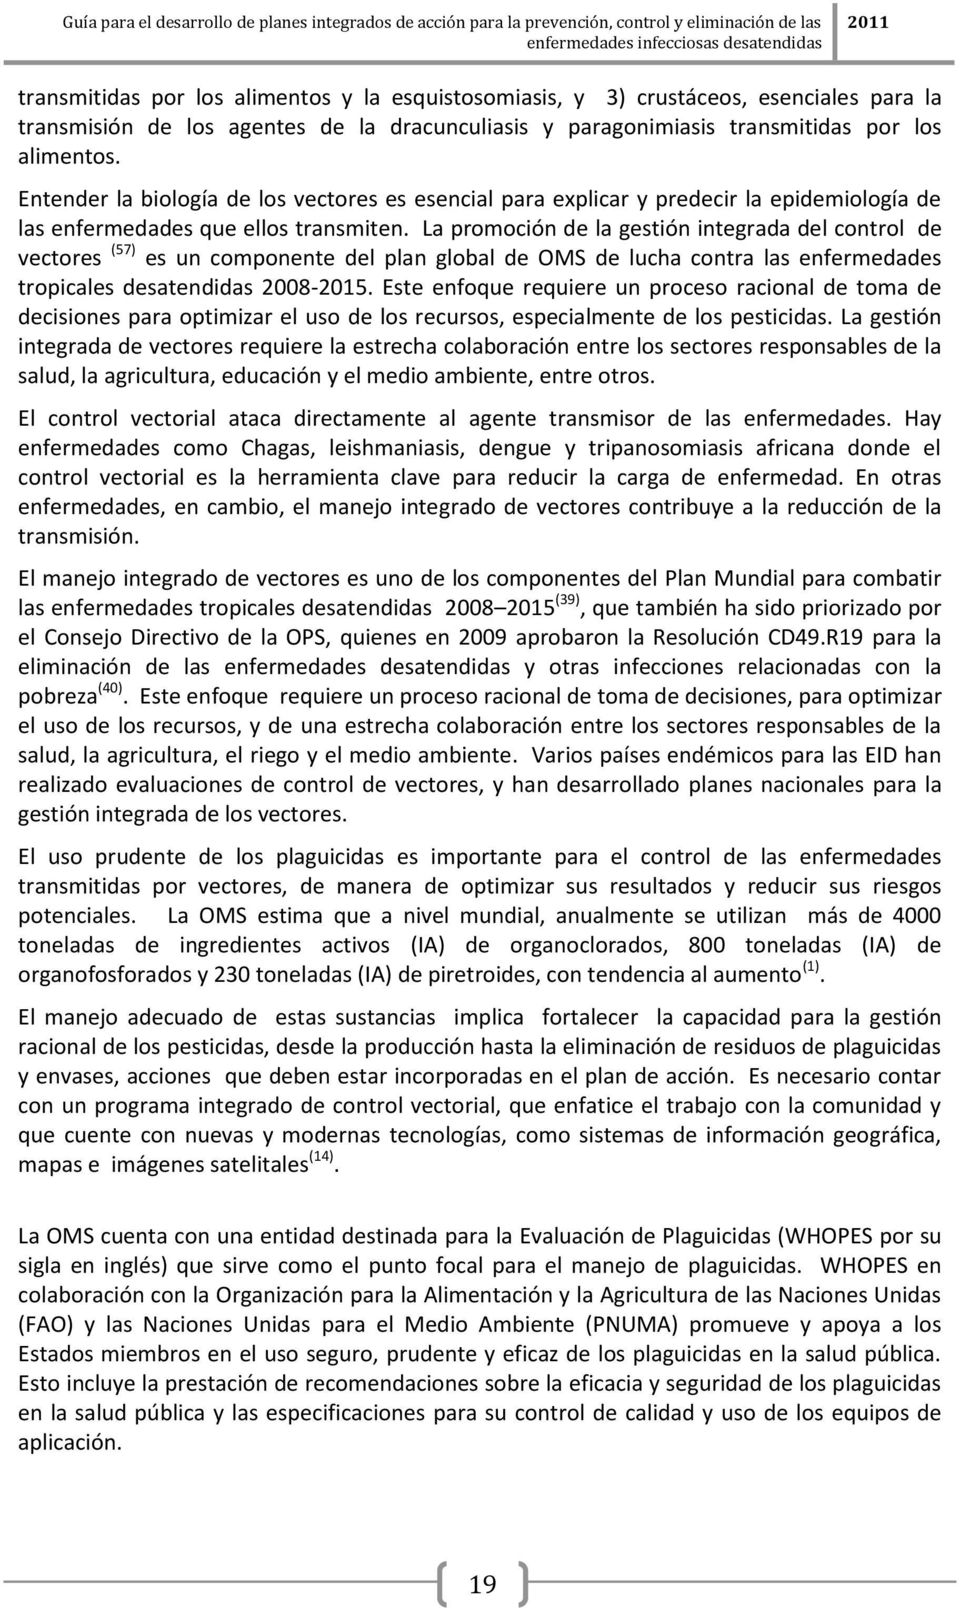 La promoción de la gestión integrada del control de vectores (57) es un componente del plan global de OMS de lucha contra las enfermedades tropicales desatendidas 2008-2015.